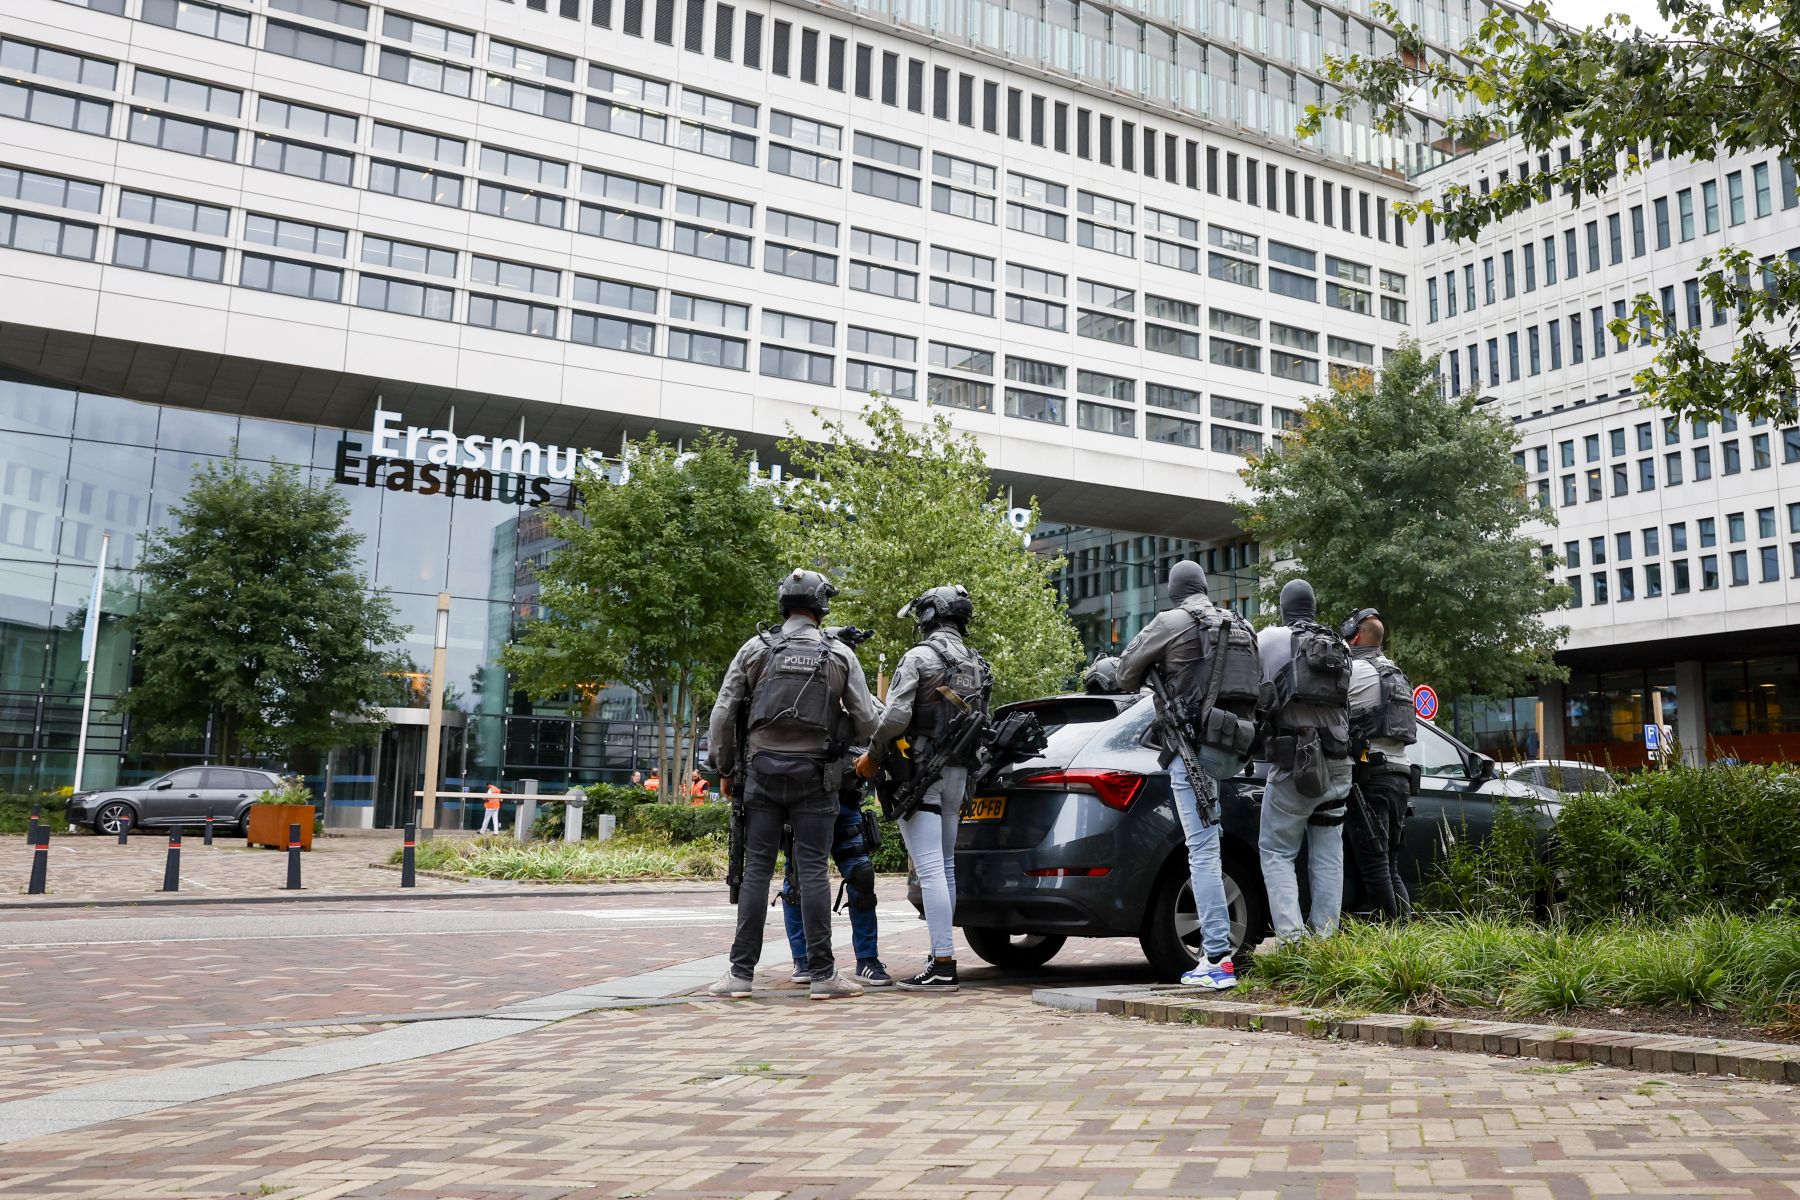 Legalább két embert megölt egy lövöldöző Rotterdamban